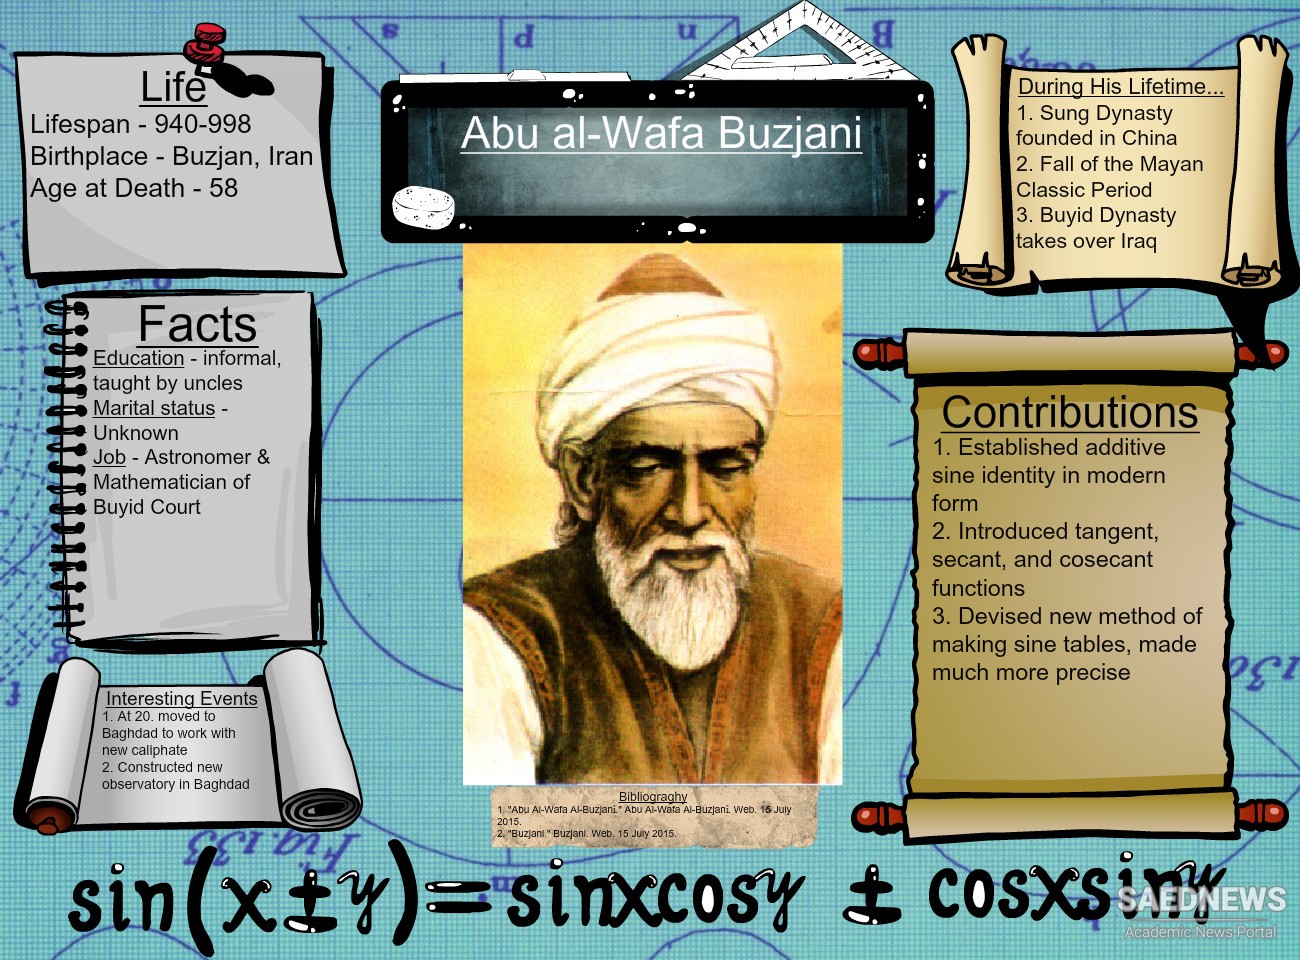 अबुल वफ़ा अल-बुज़ानी खगोलशास्त्री और त्रिकोणमितीय प्रतिभा